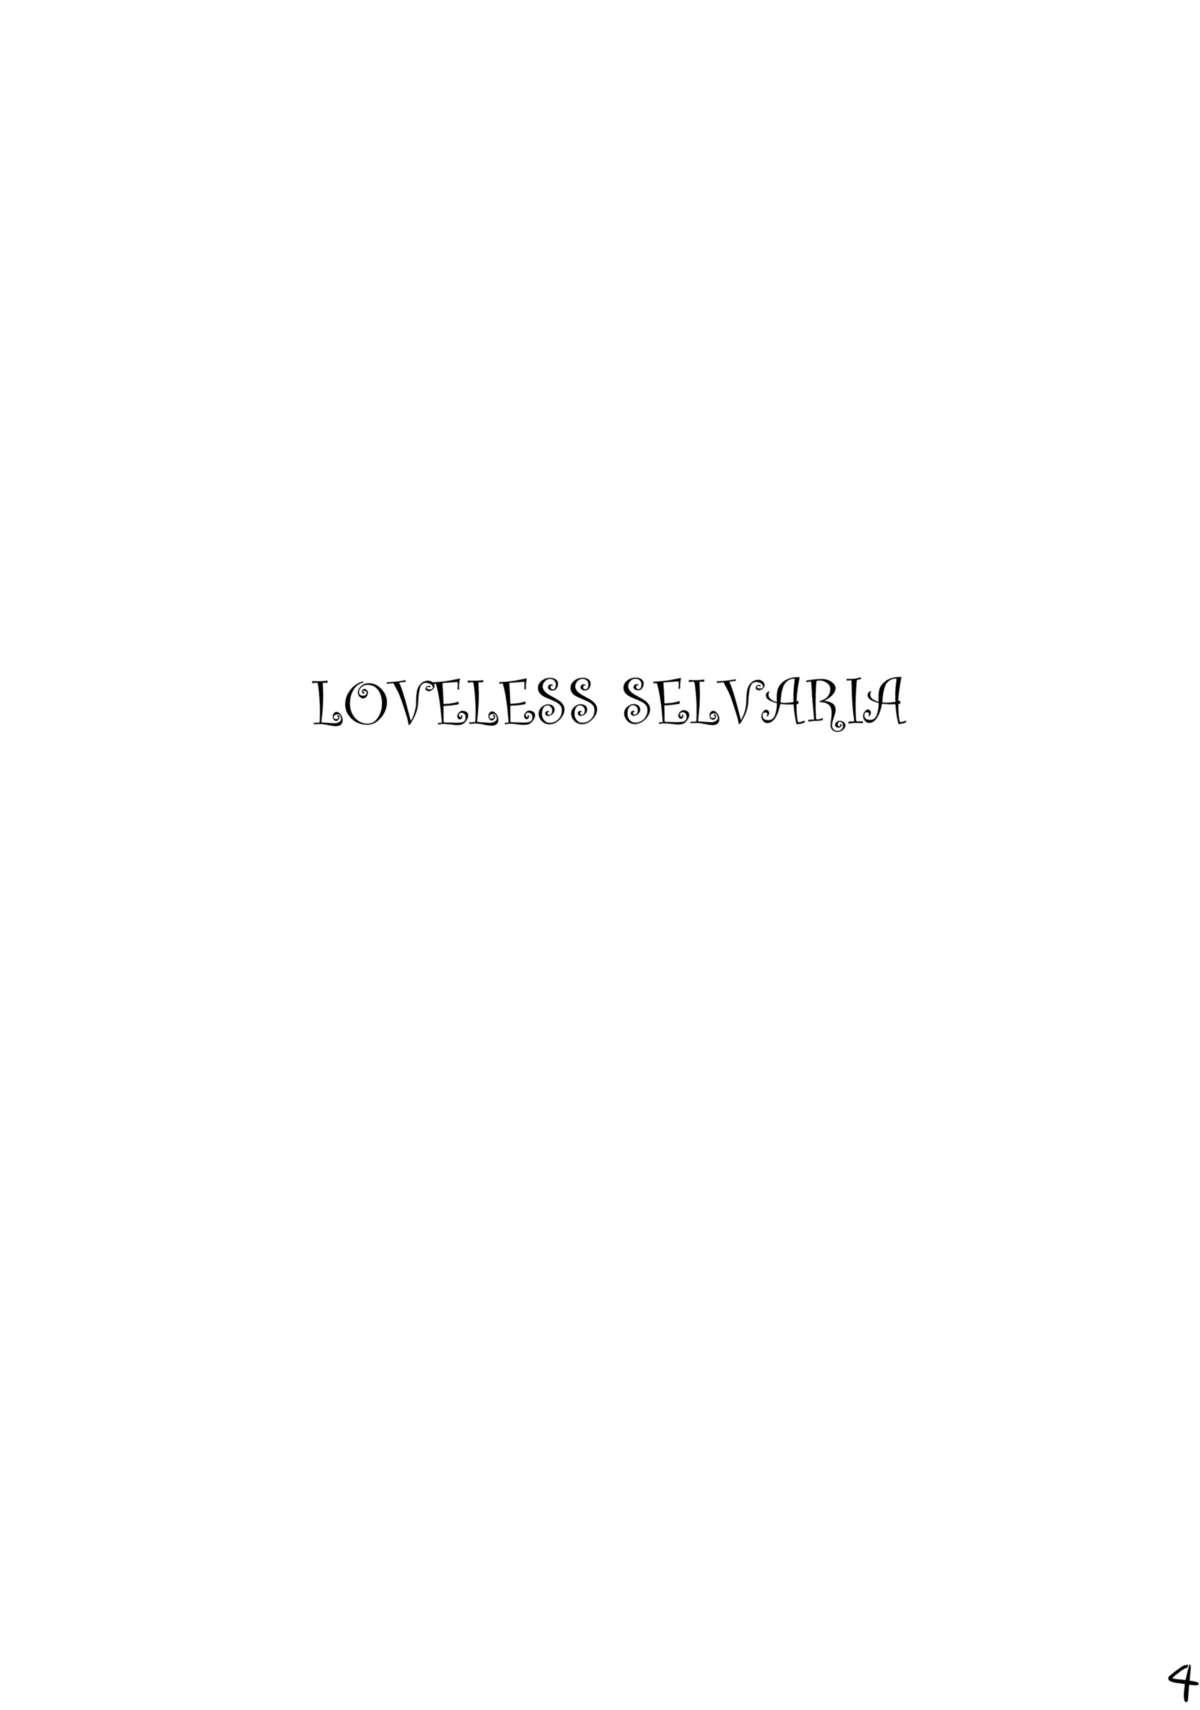 Loveless Selvaria 2